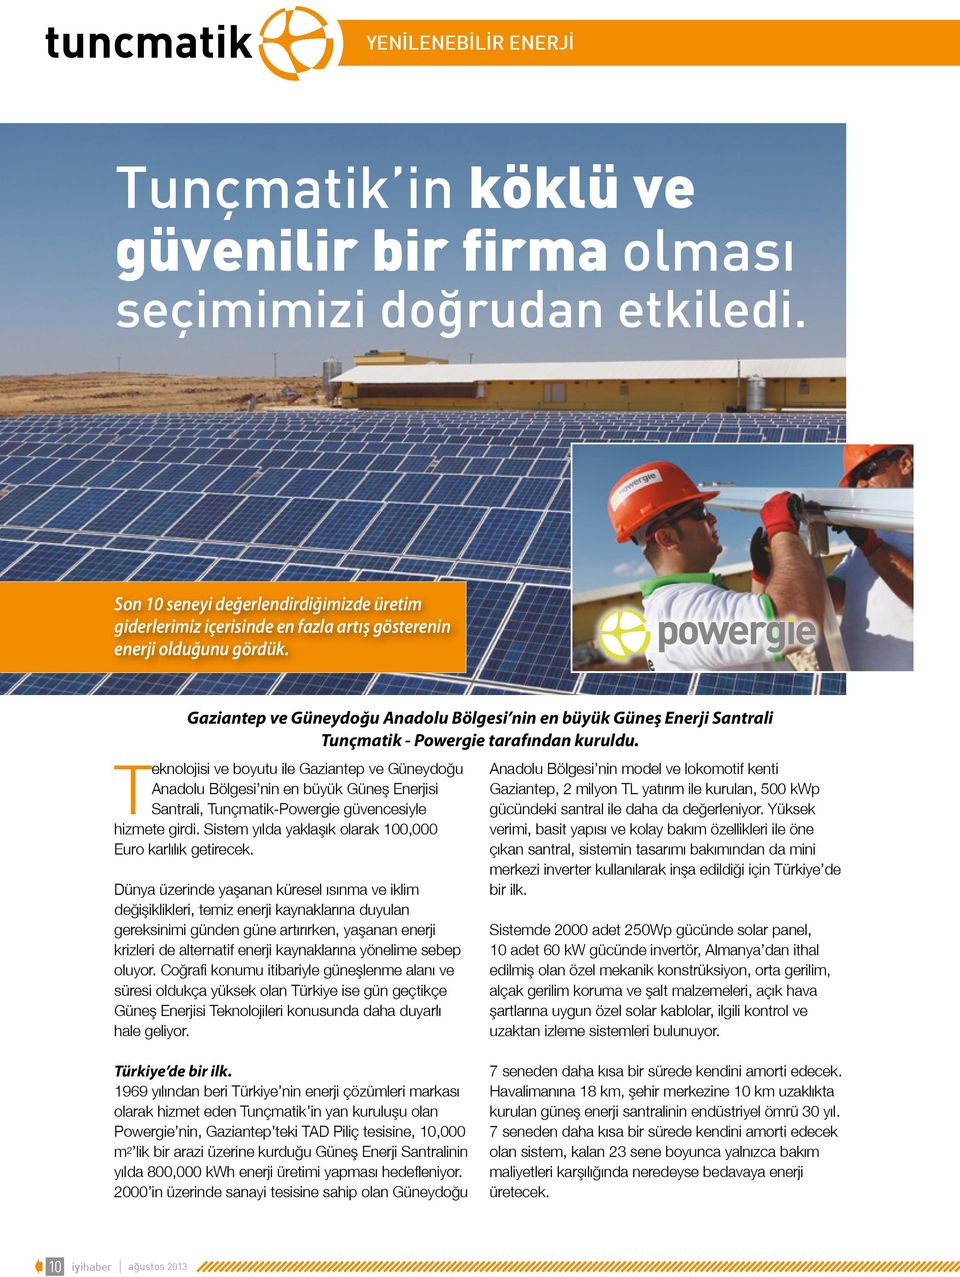 Gaziantep ve Güneydoğu Anadolu Bölgesi nin en büyük Güneş Enerji Santrali Tunçmatik - Powergie tarafından kuruldu.